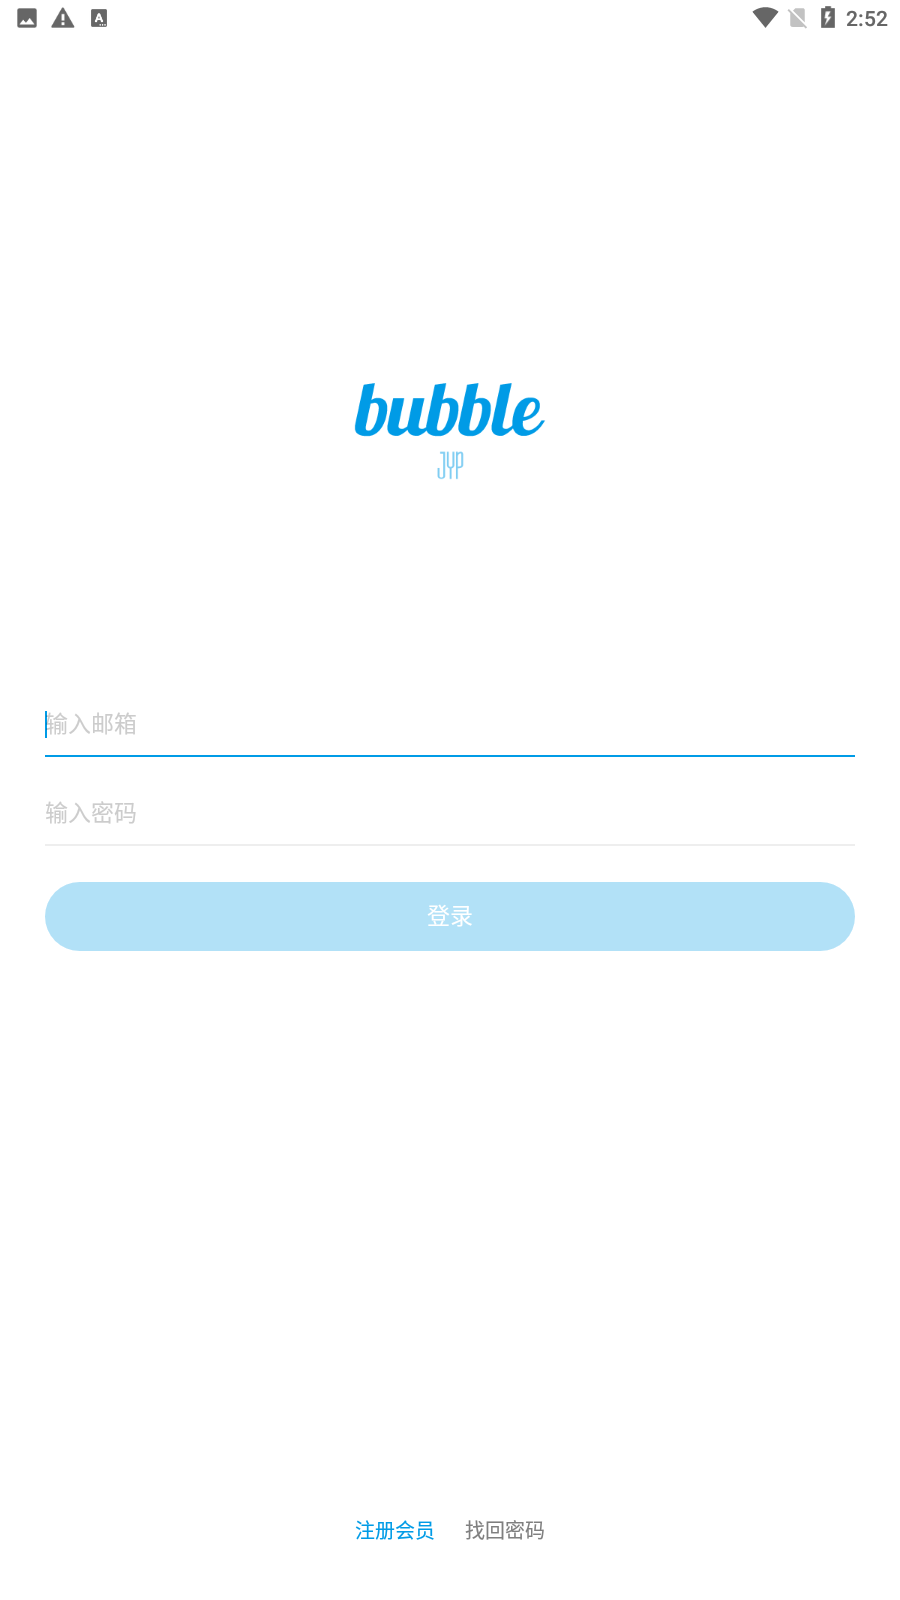 JYP bubble°